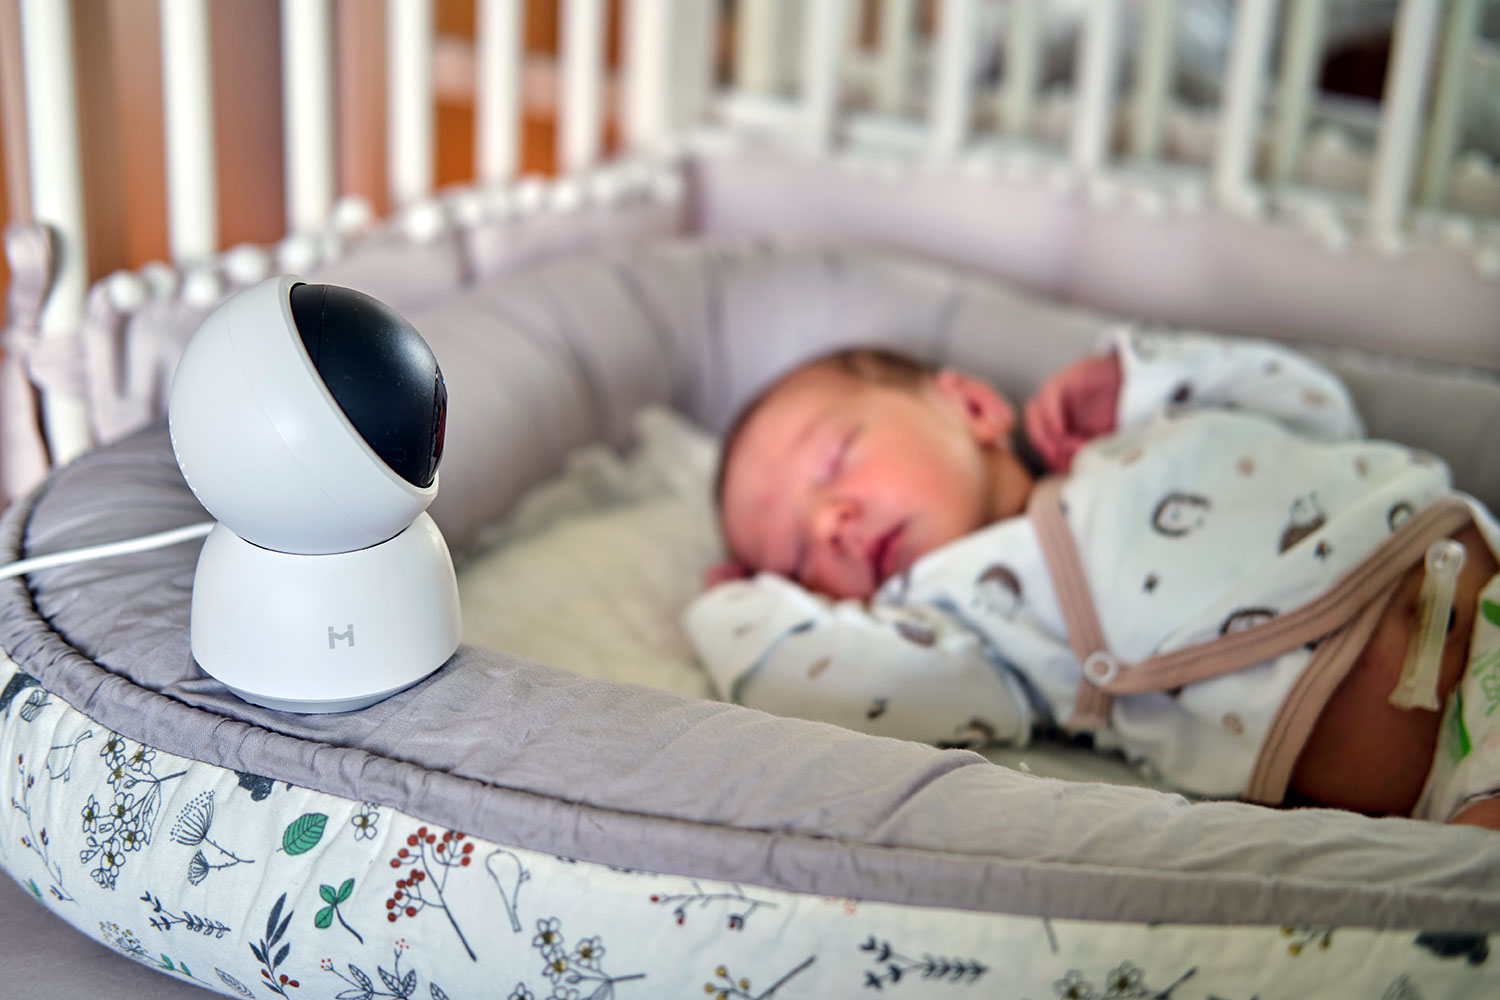 Monitor para bebés con cámara: ¿cómo evitar hackeos?